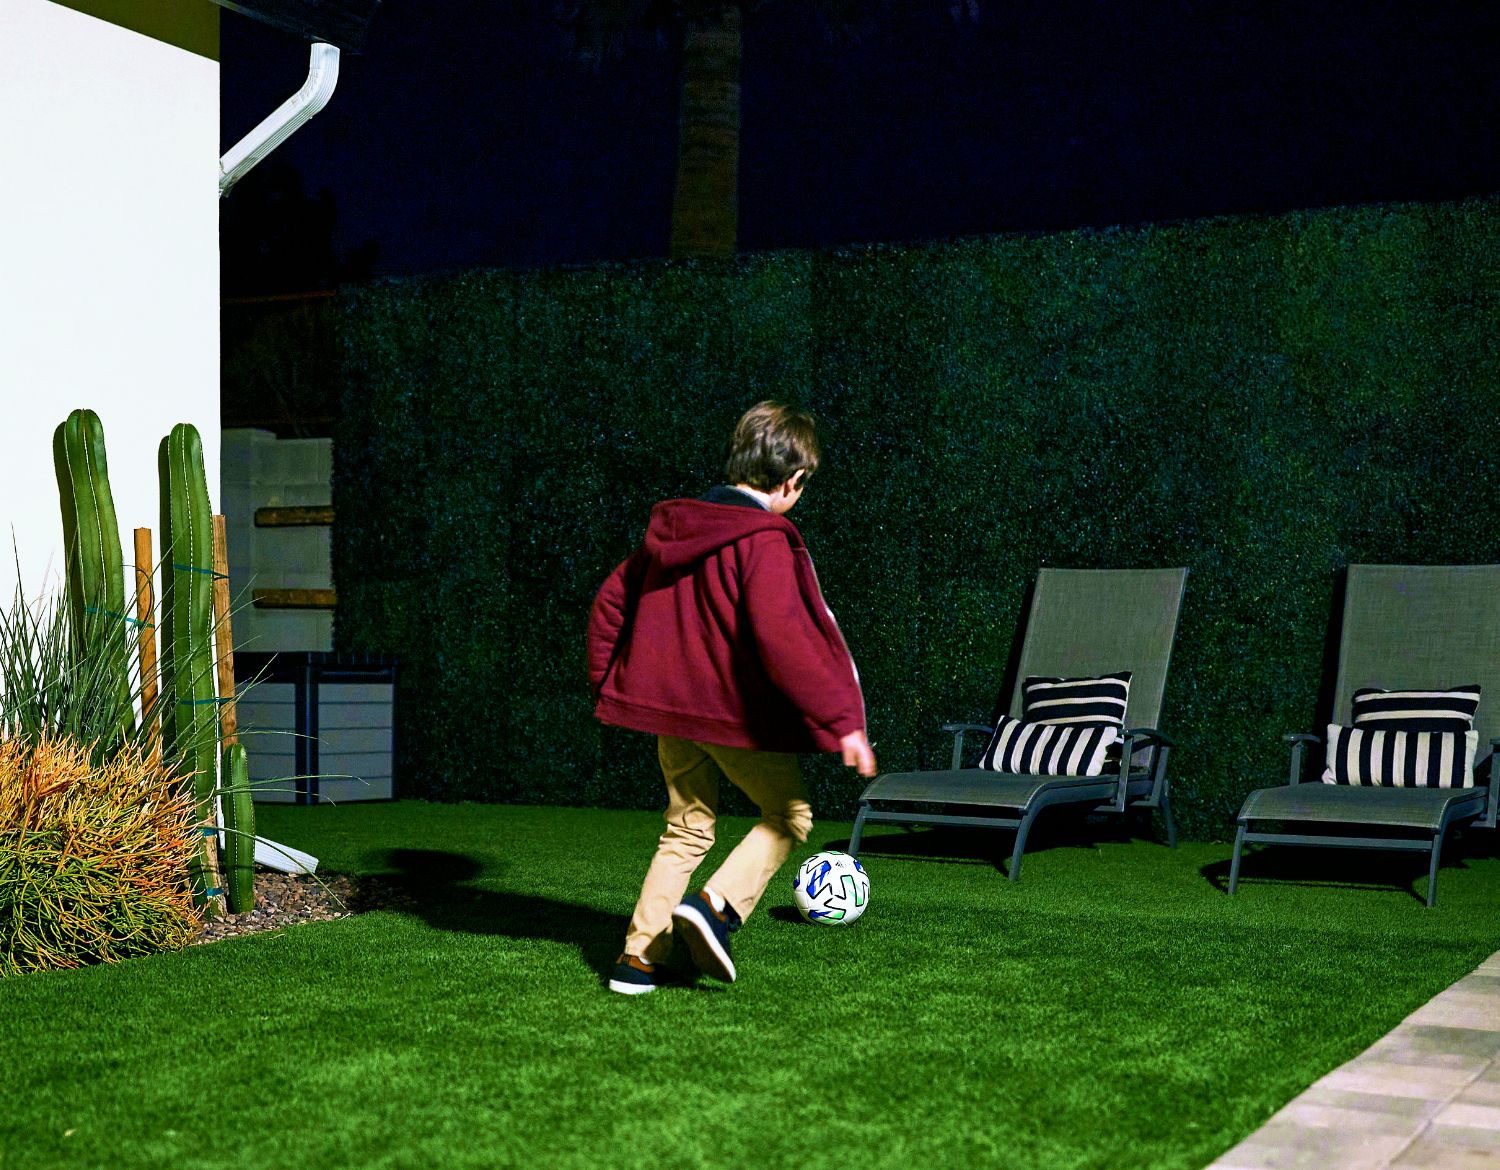 Ein kleiner Junge, der nachts im Garten Fußball spielt